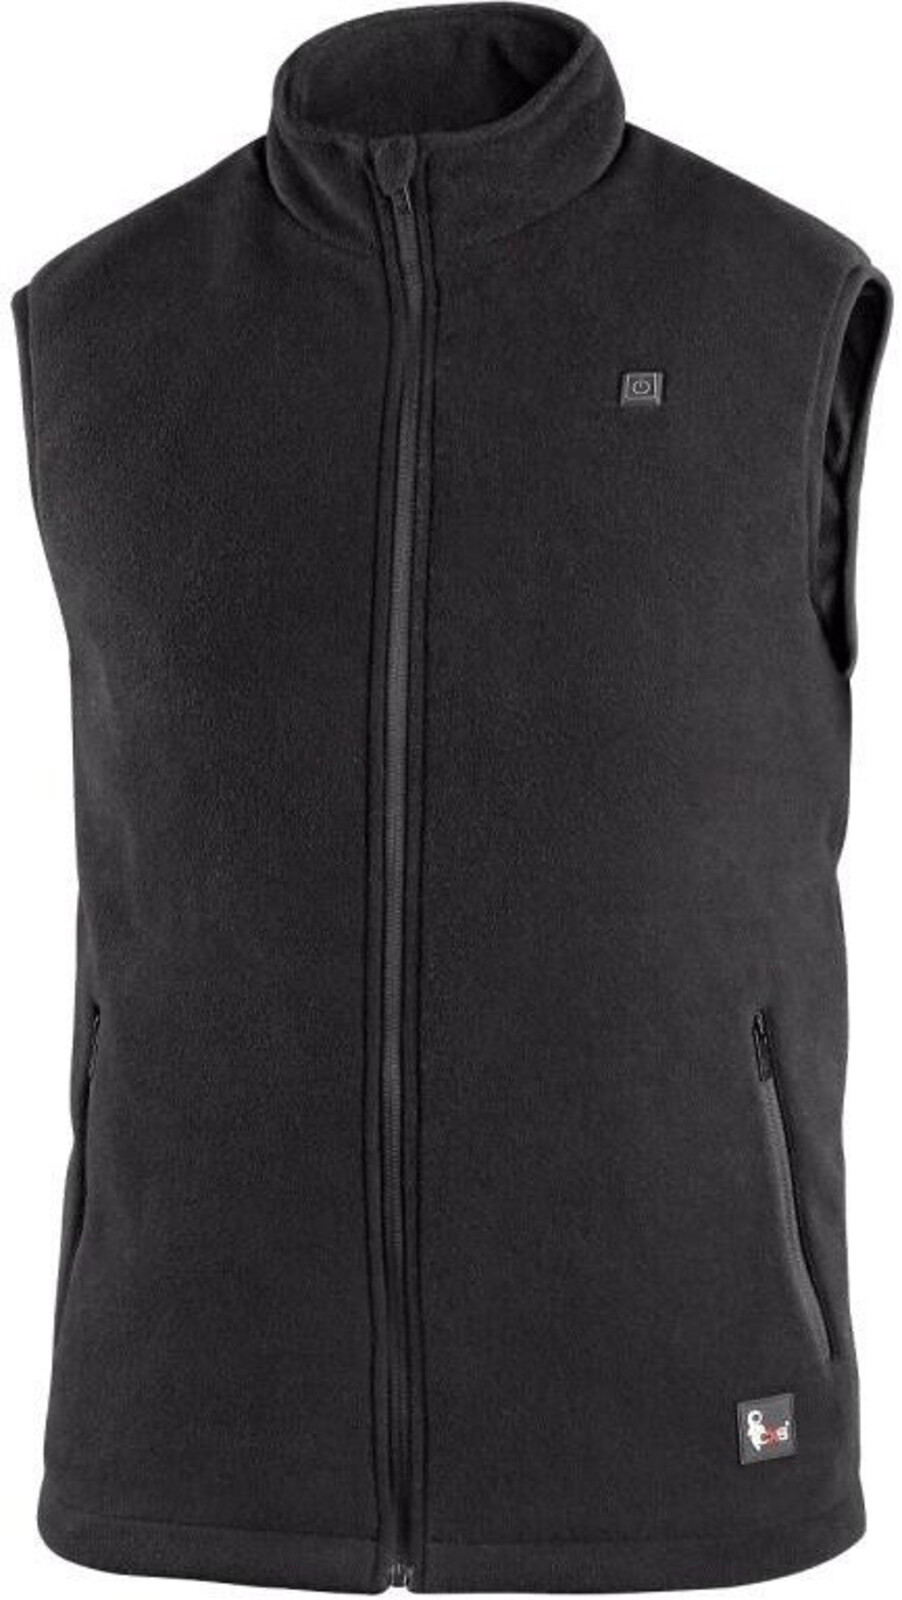 Pánska fleecová vyhrievaná vesta CXS Antarktida - veľkosť: S, farba: čierna